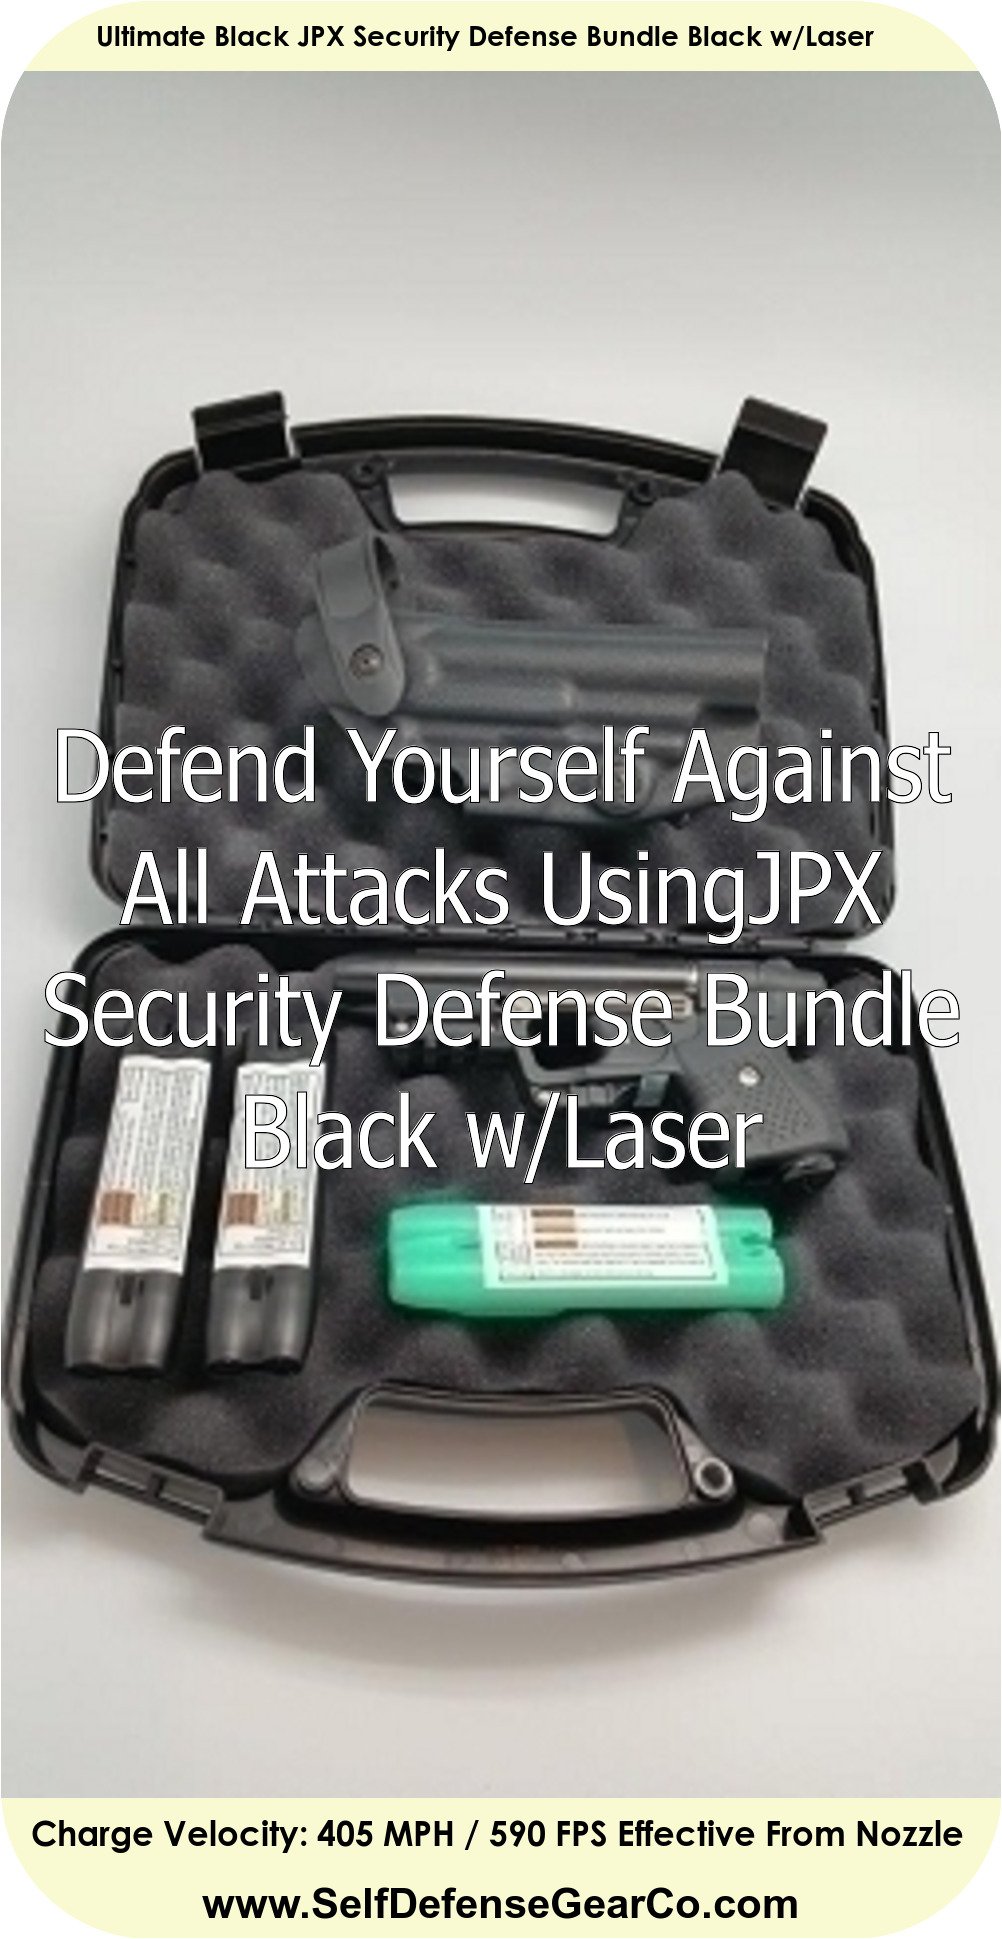 Ultimate Black JPX Security Defense Bundle Black w/Laser